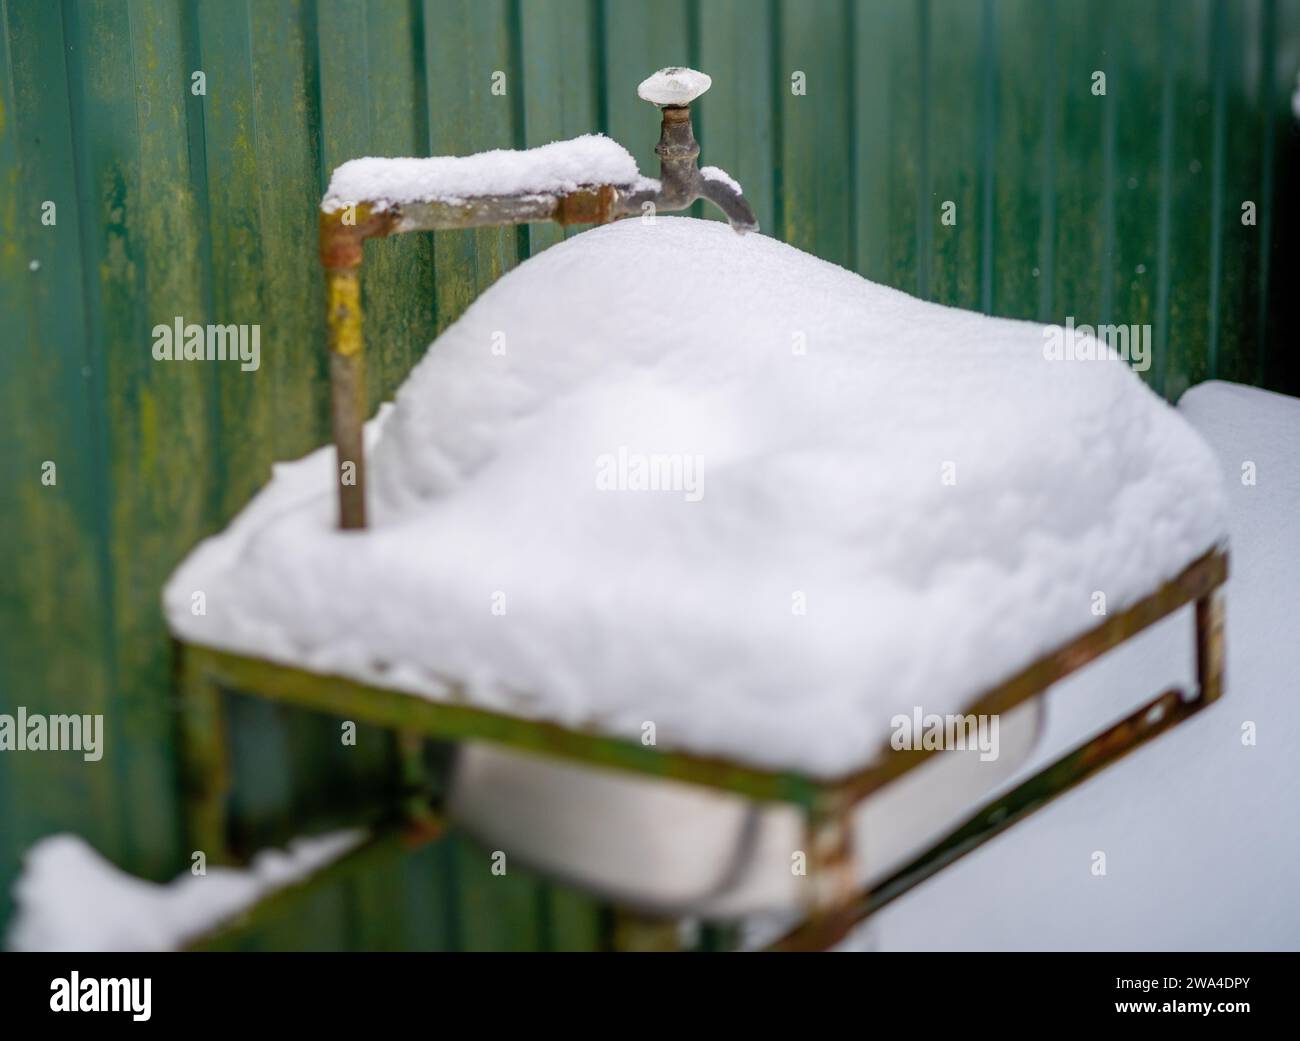 Waschbecken im Freien voller Schnee und gefrorenem Wasserhahn, keine Leute Stockfoto